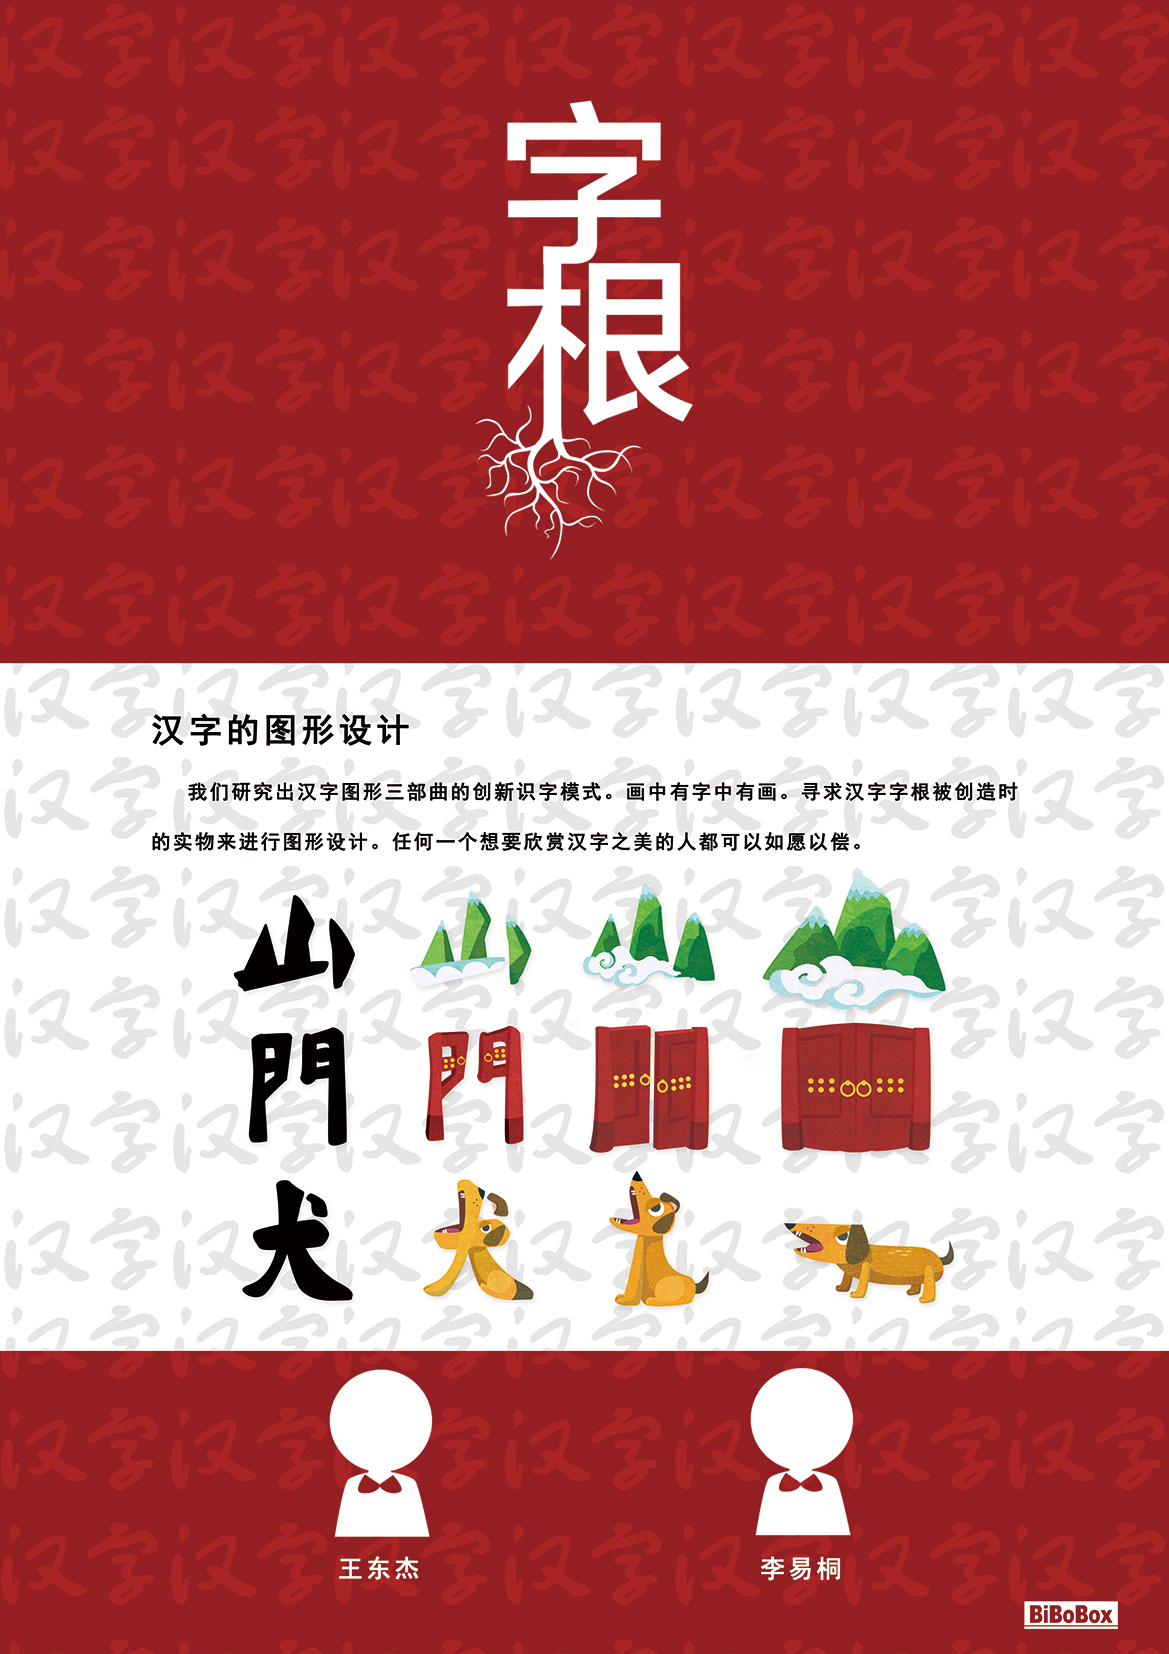 通过我们的图形设计,汉字的三步变形充满汉字的魅力.